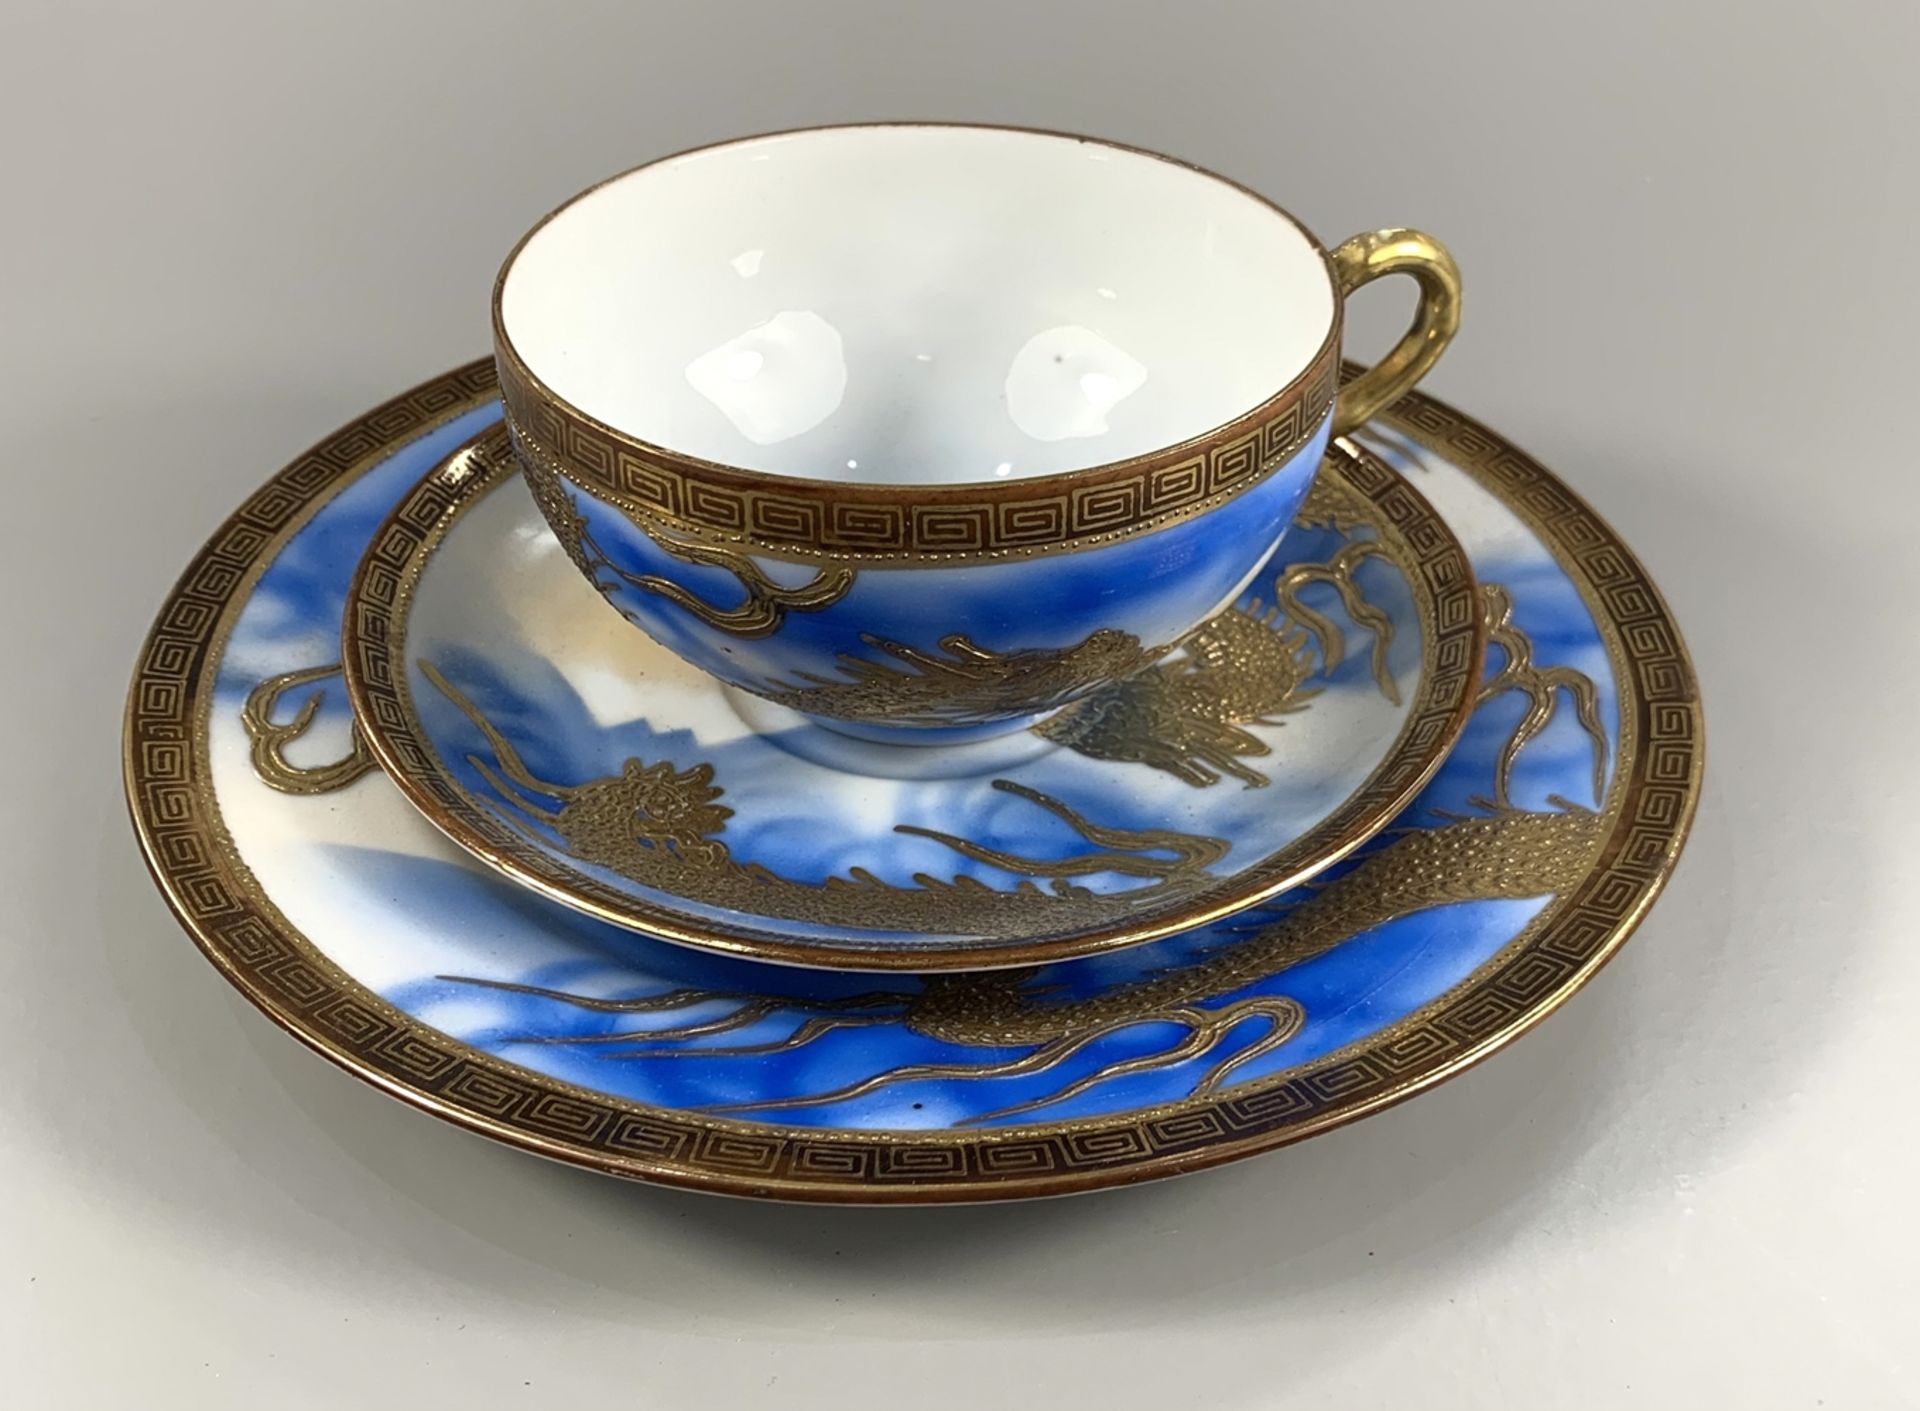 3tlg. Gedeck, Japan, 1930er Jahre, Porzellan, hellblau-weiß glasiert, goldgehöhtes Drachenmotiv,